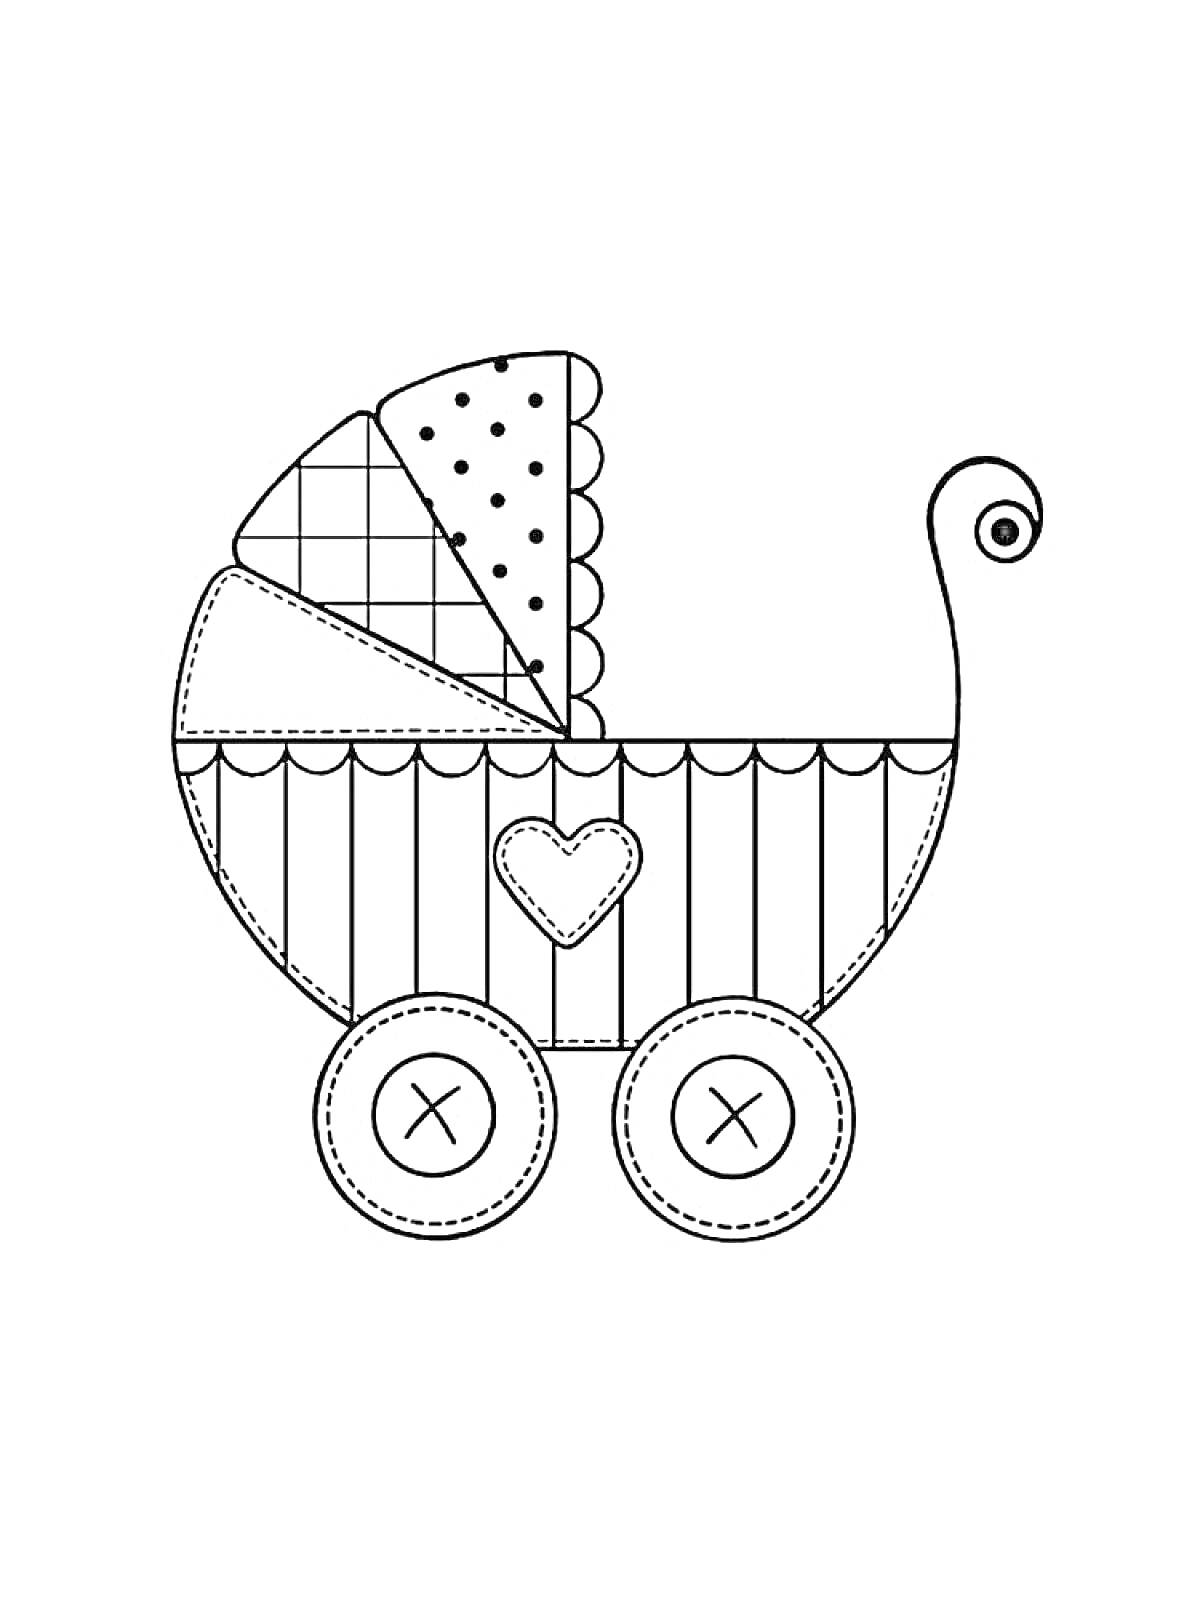 Раскраска Коляска с ручкой, верхним навесом, декоративными швами на колесах и сердечком на корпусе